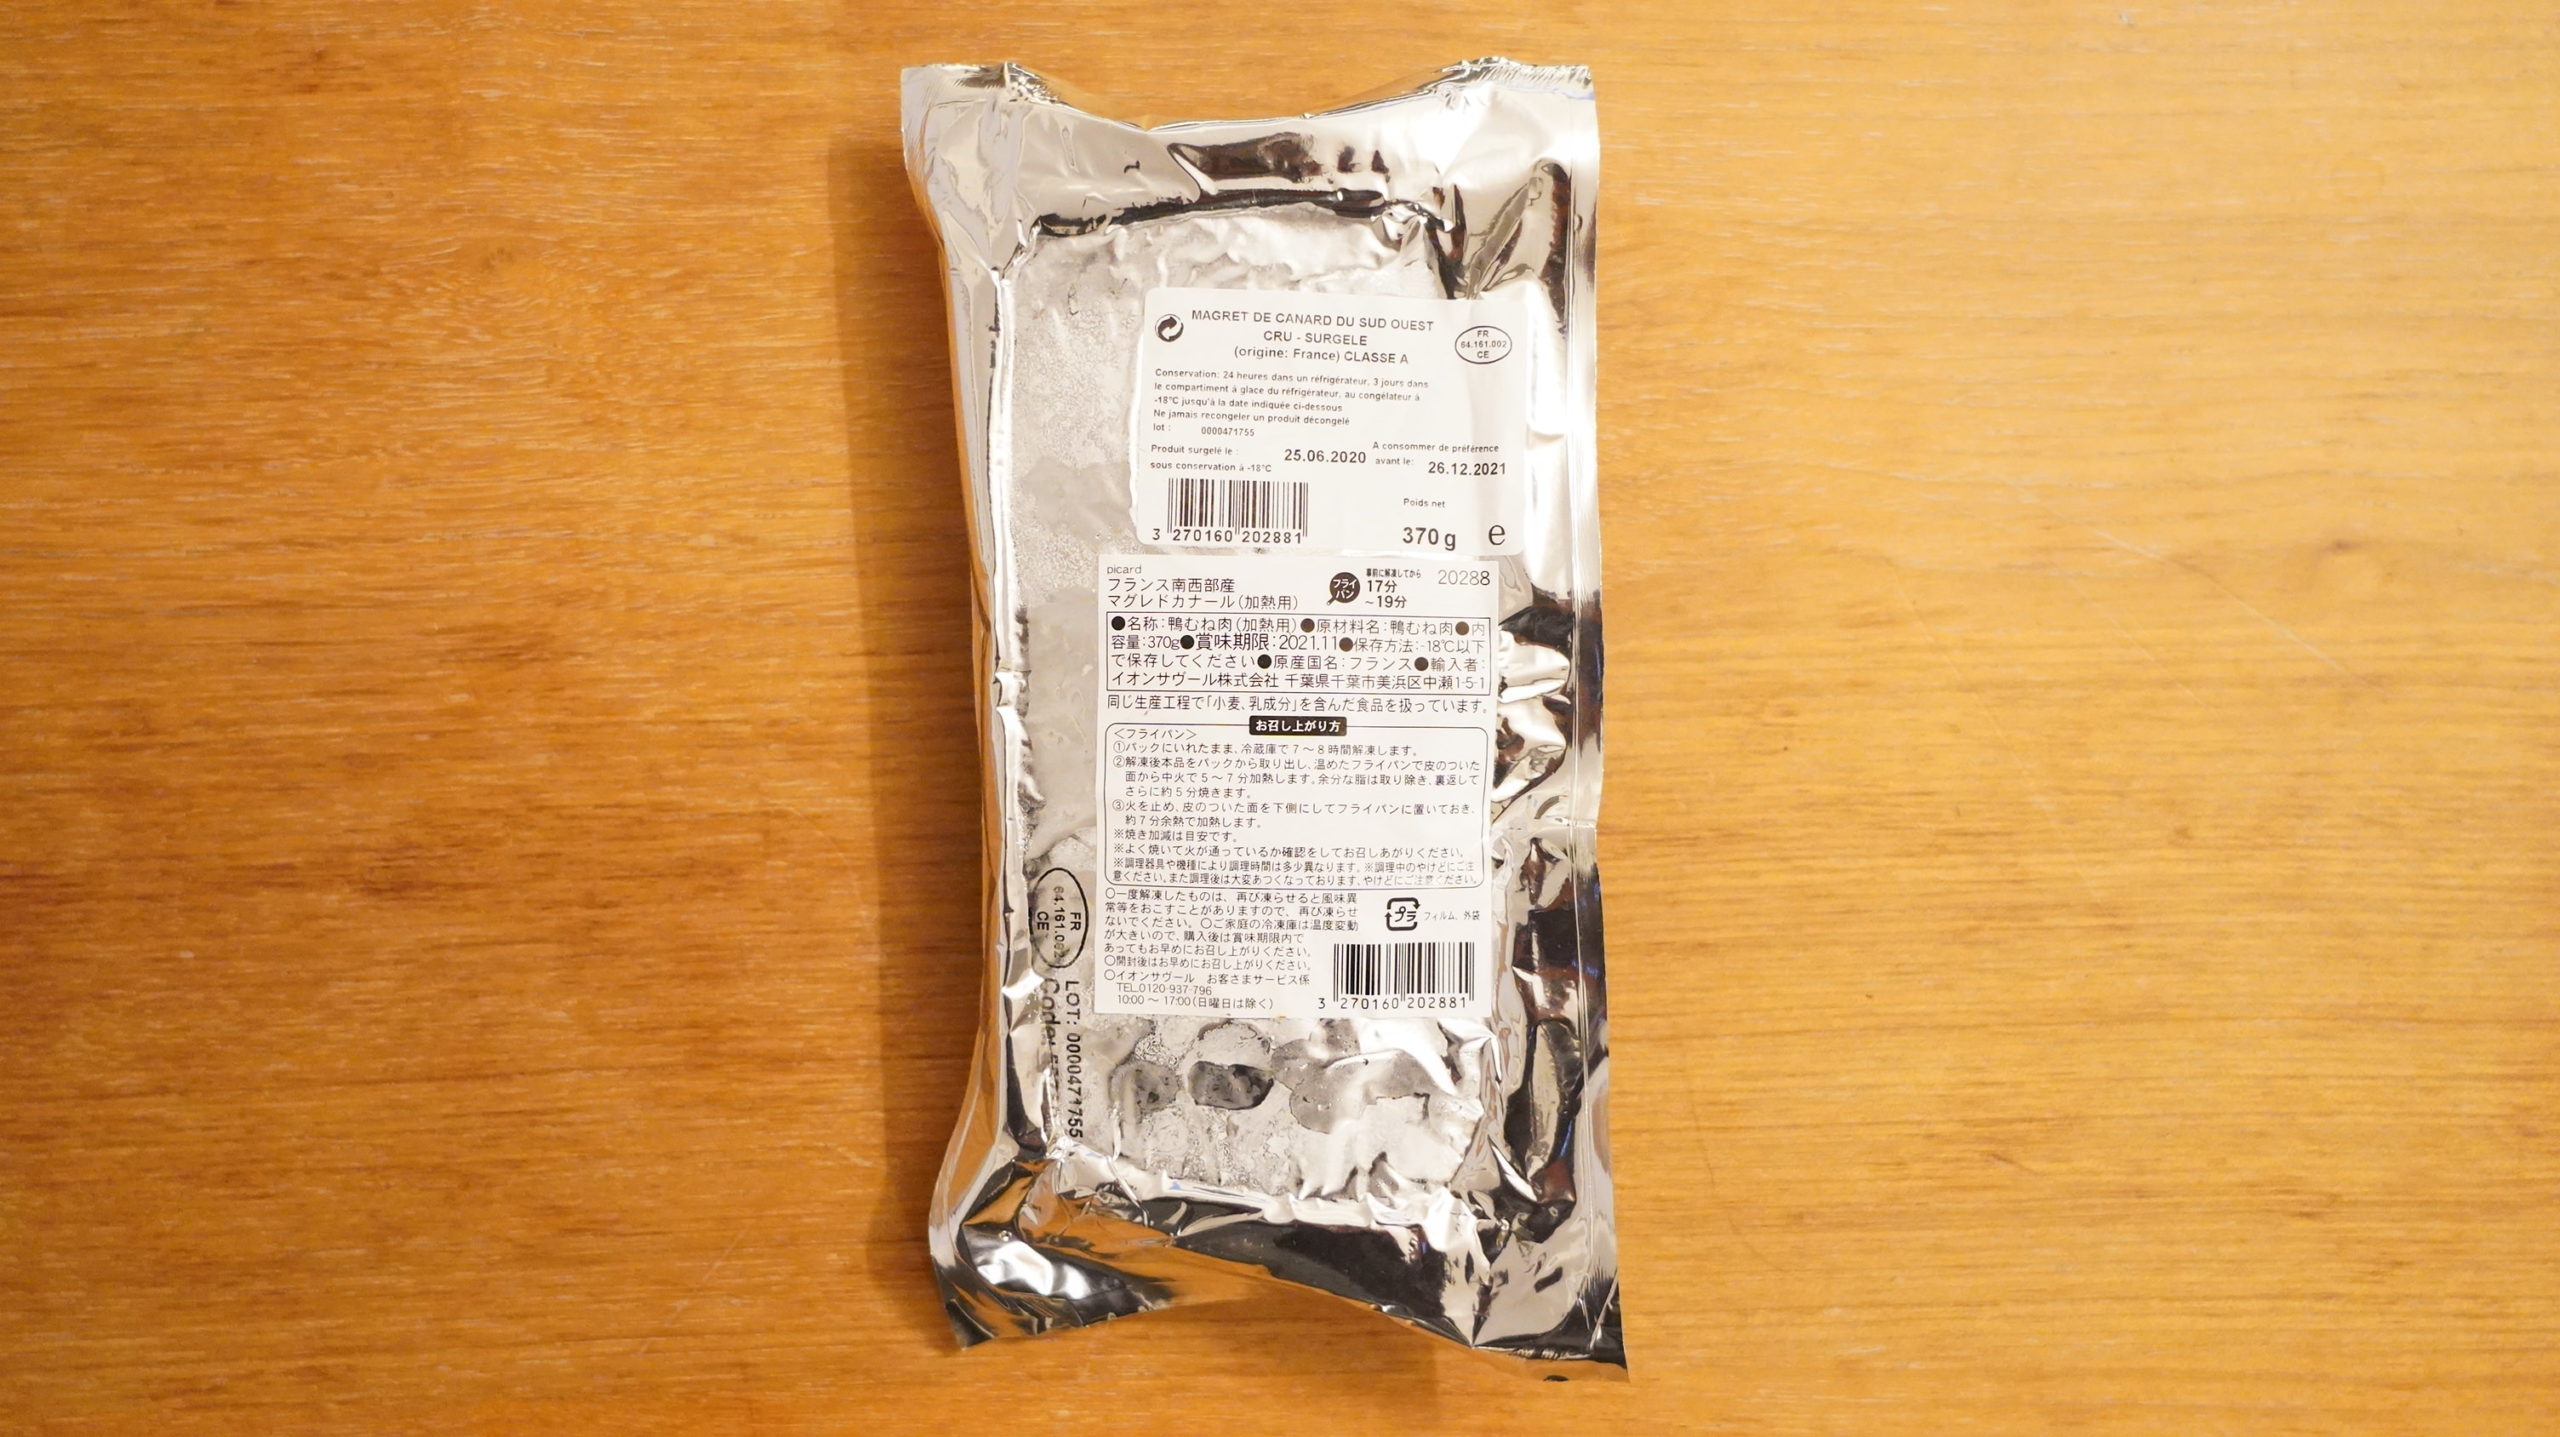 ピカールの冷凍食品「フランス南西部産マグレドカナール」のパッケージ裏面の写真